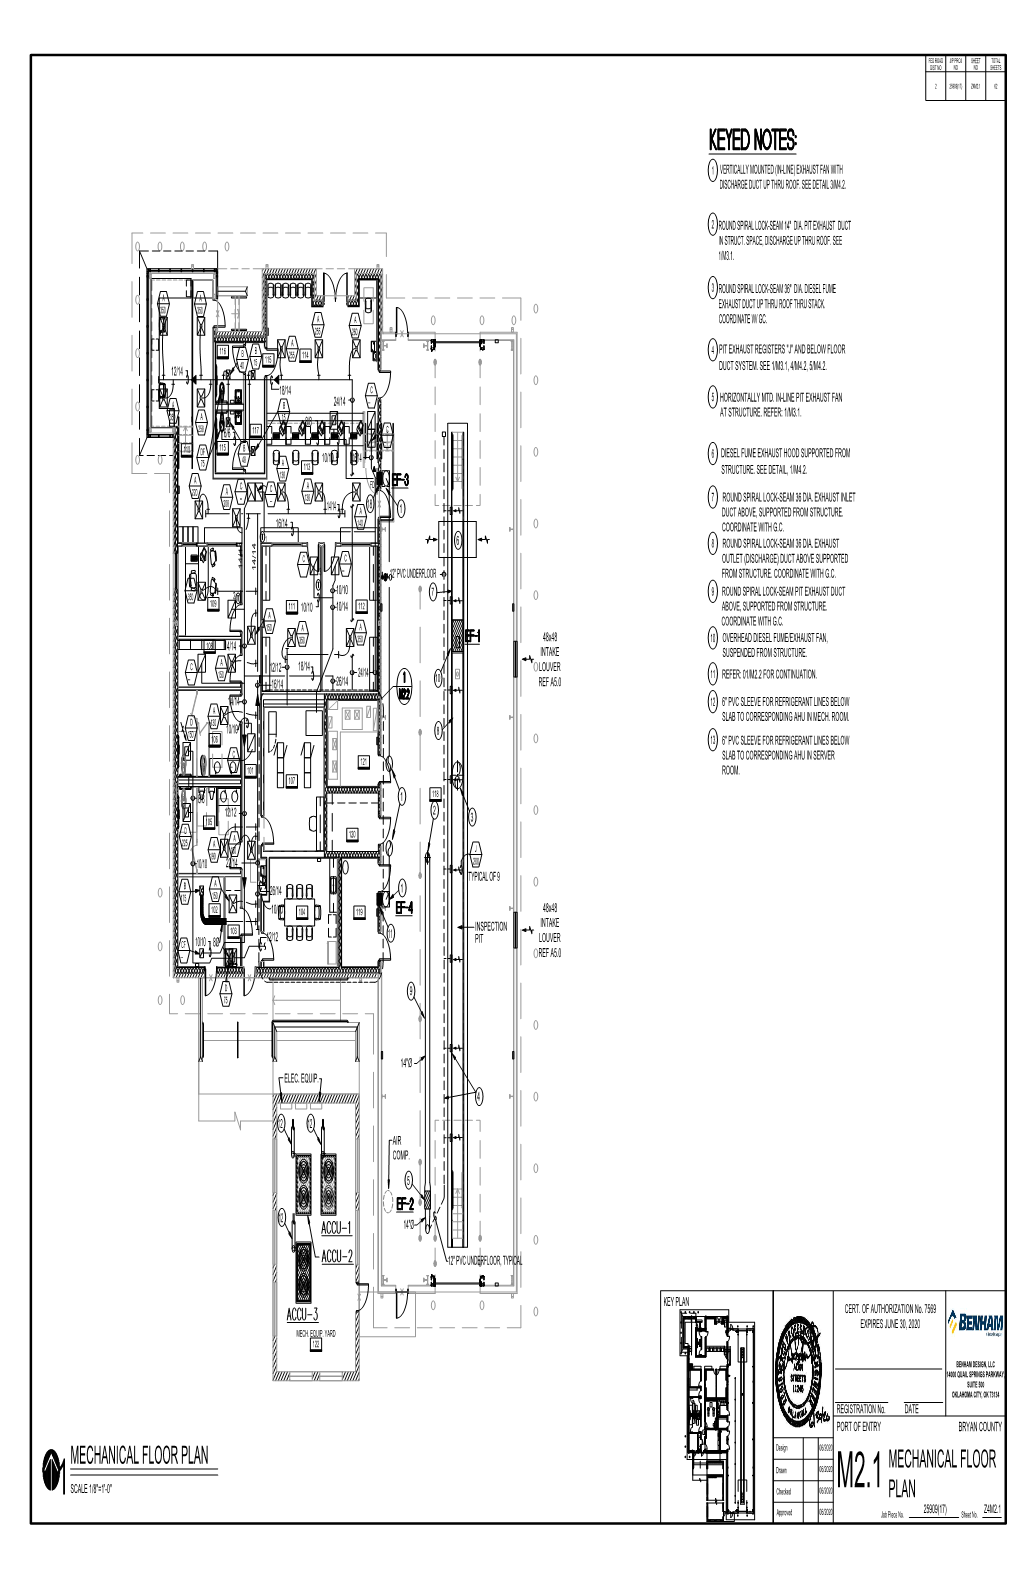 Mechanical Floor Plan Mechanical Floor Plan